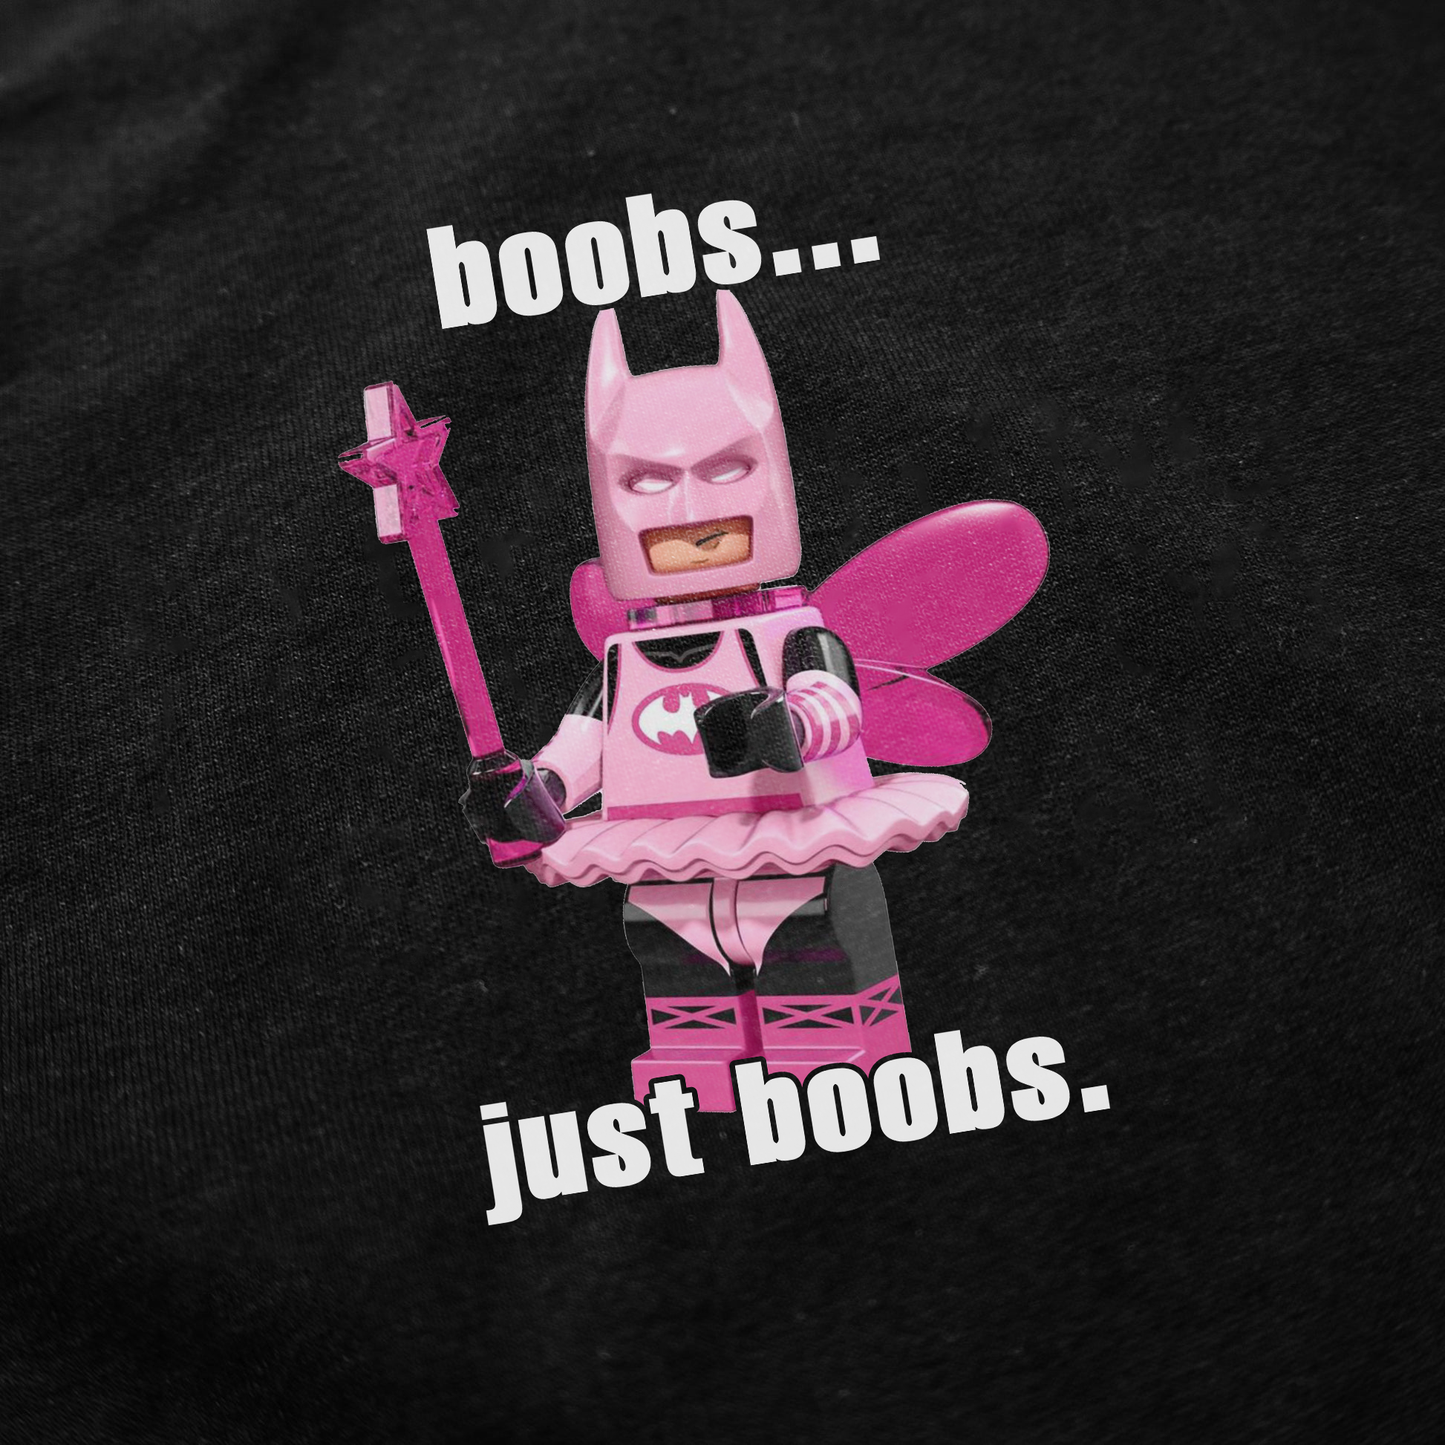 Boobs... Just Boobs. T-Shirt